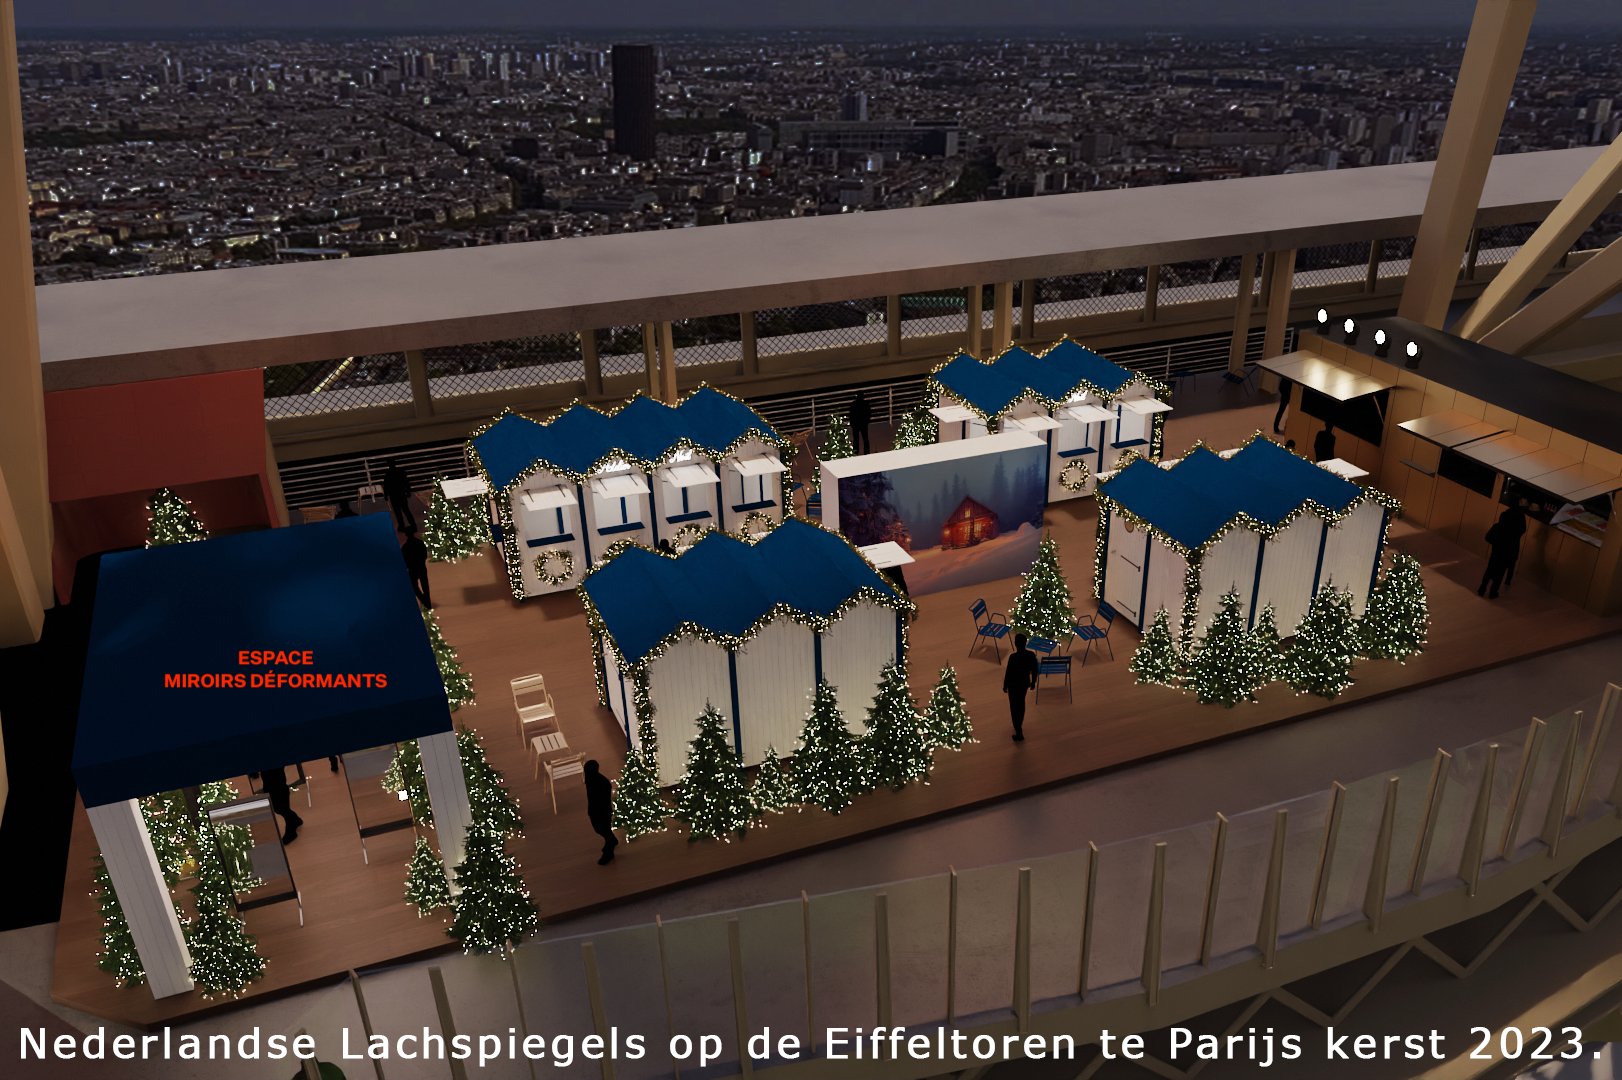 Lachspiegels op de 1e etage van de Eiffeltoren. Kerst 2023